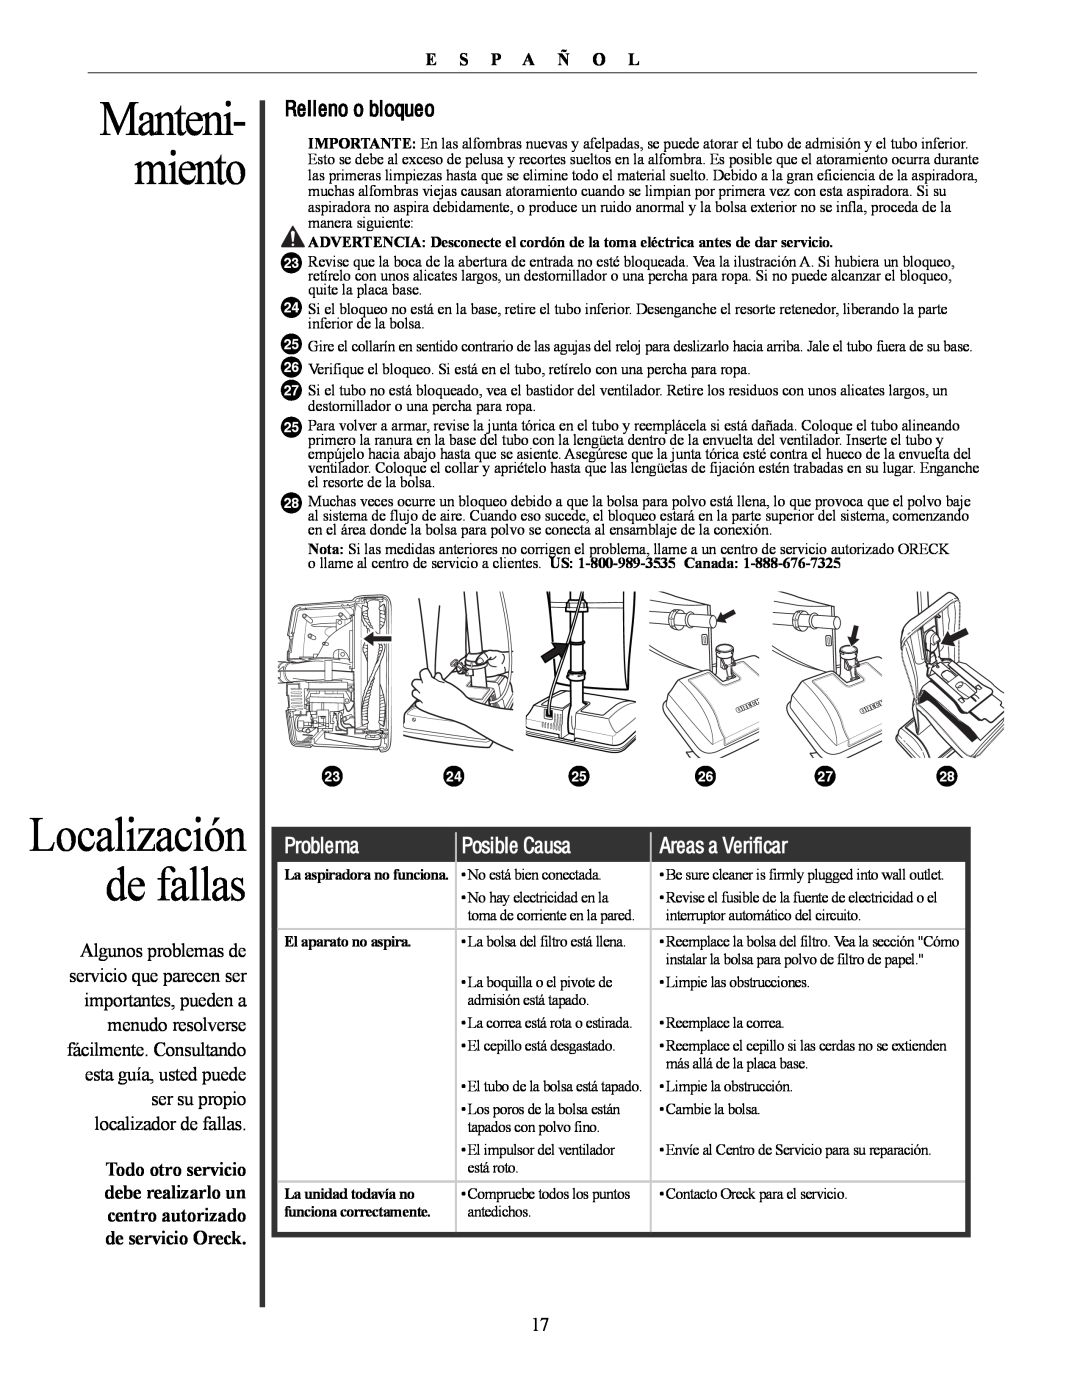 Oreck U4300 manual Localización de fallas, Problema, Posible Causa, Areas a Verificar, Manteni- miento, E S P A ñ O L 